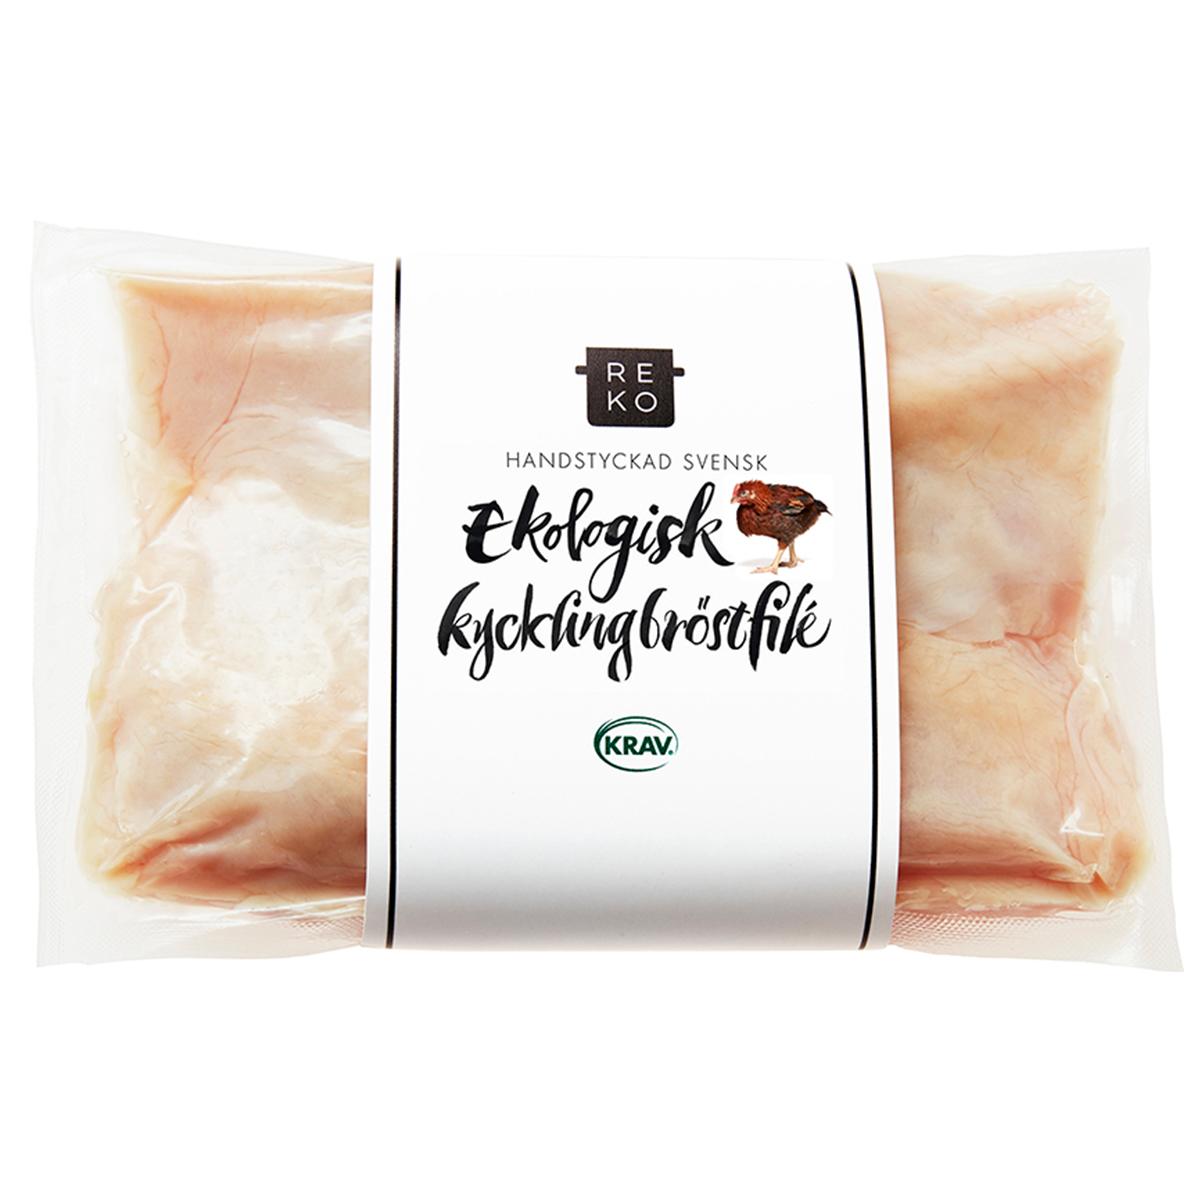 Reko Gårdar's Kycklingbröstfilé'